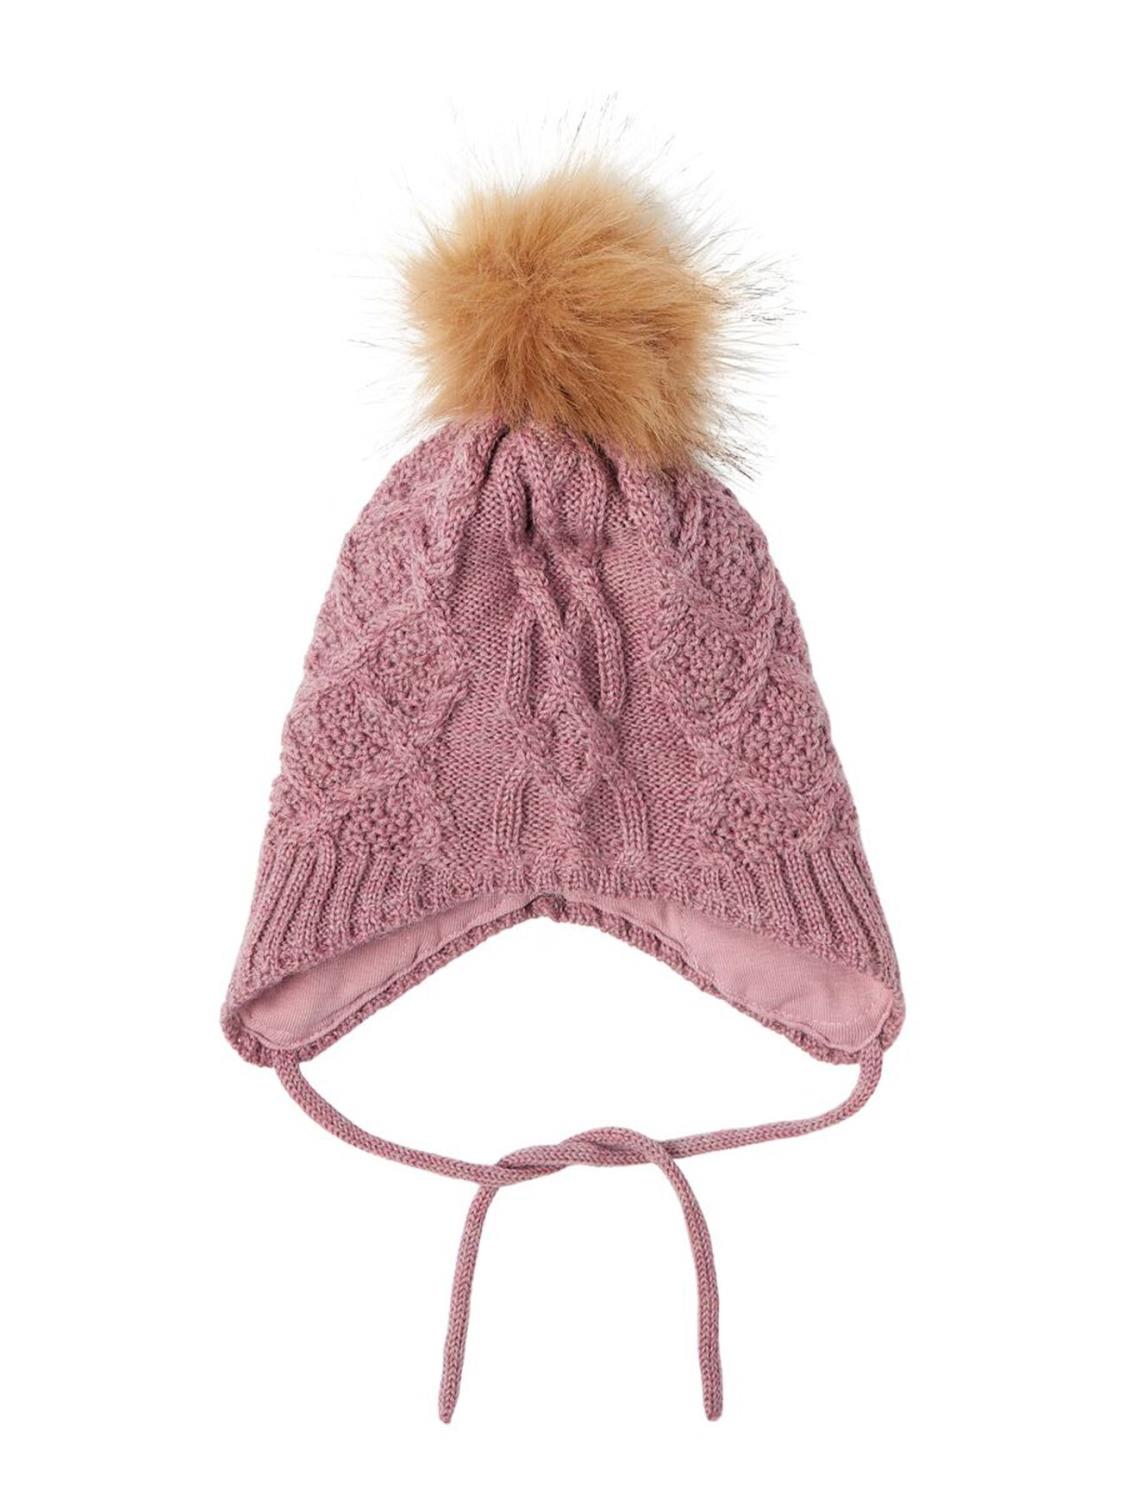 Wrilla Wool Knit Hat, Baby - Nostalgia Rose